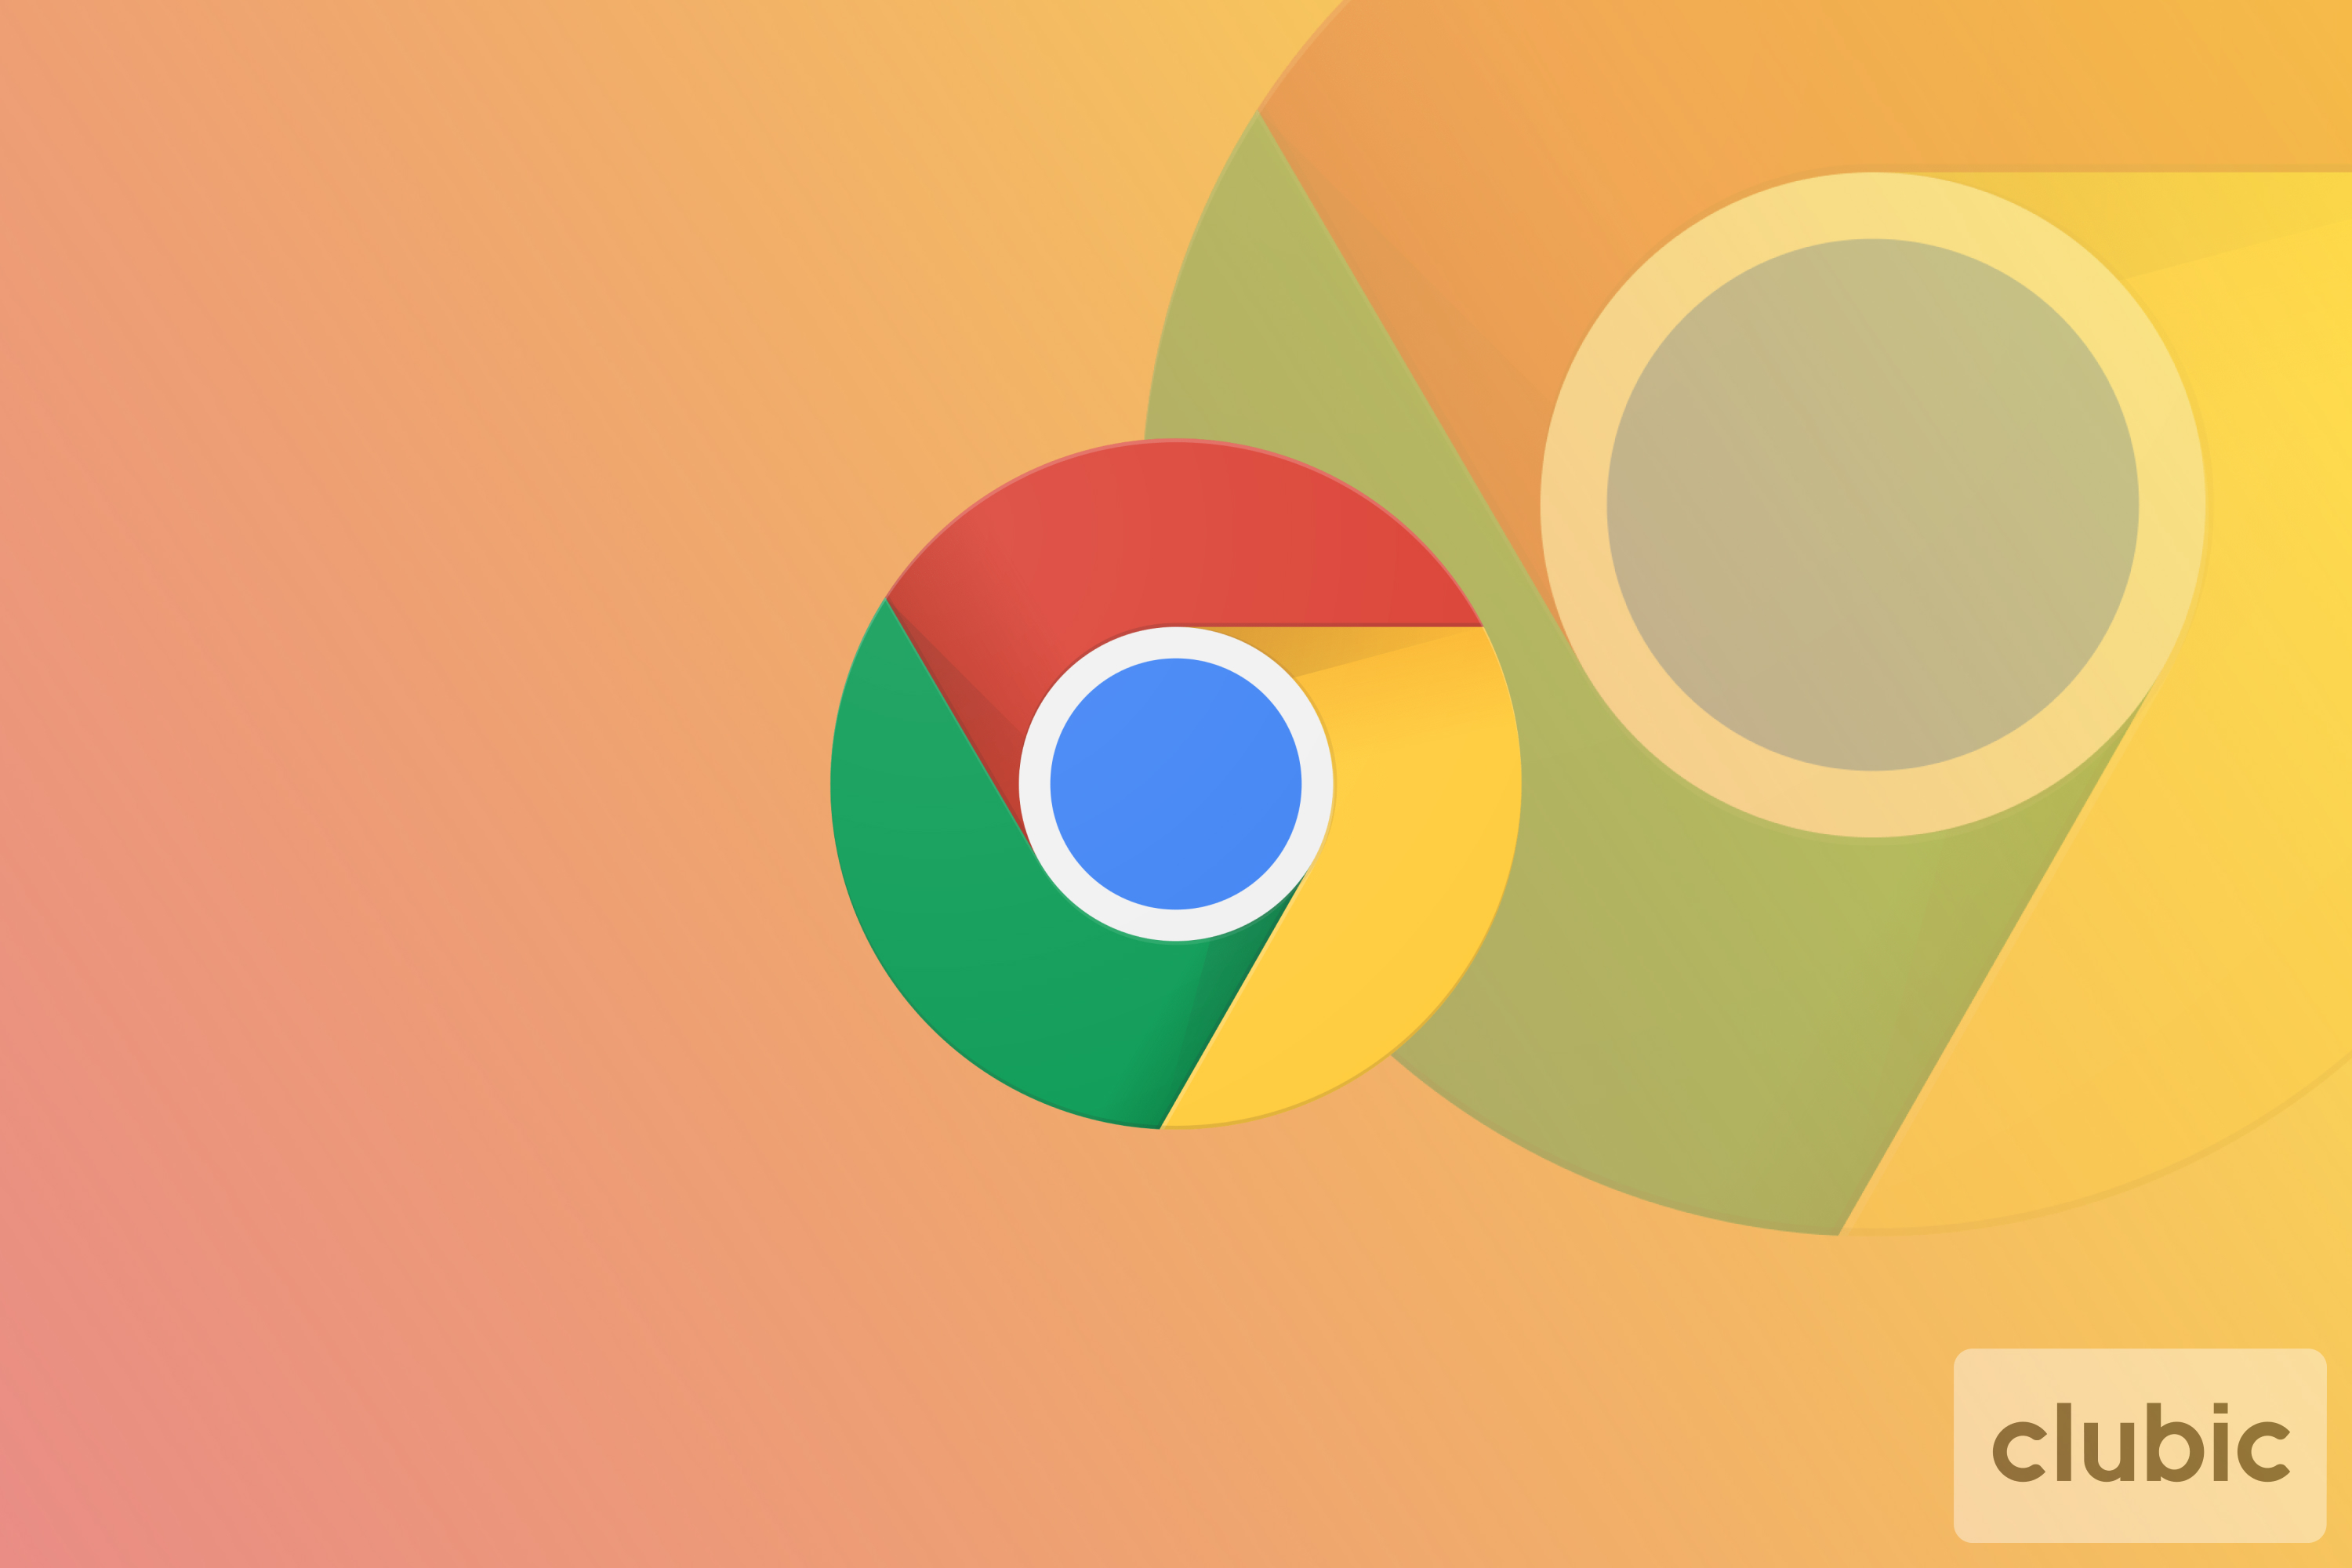 Le navigateur Chrome 90 crashe sur Windows 10 et Linux, Google publie un correctif